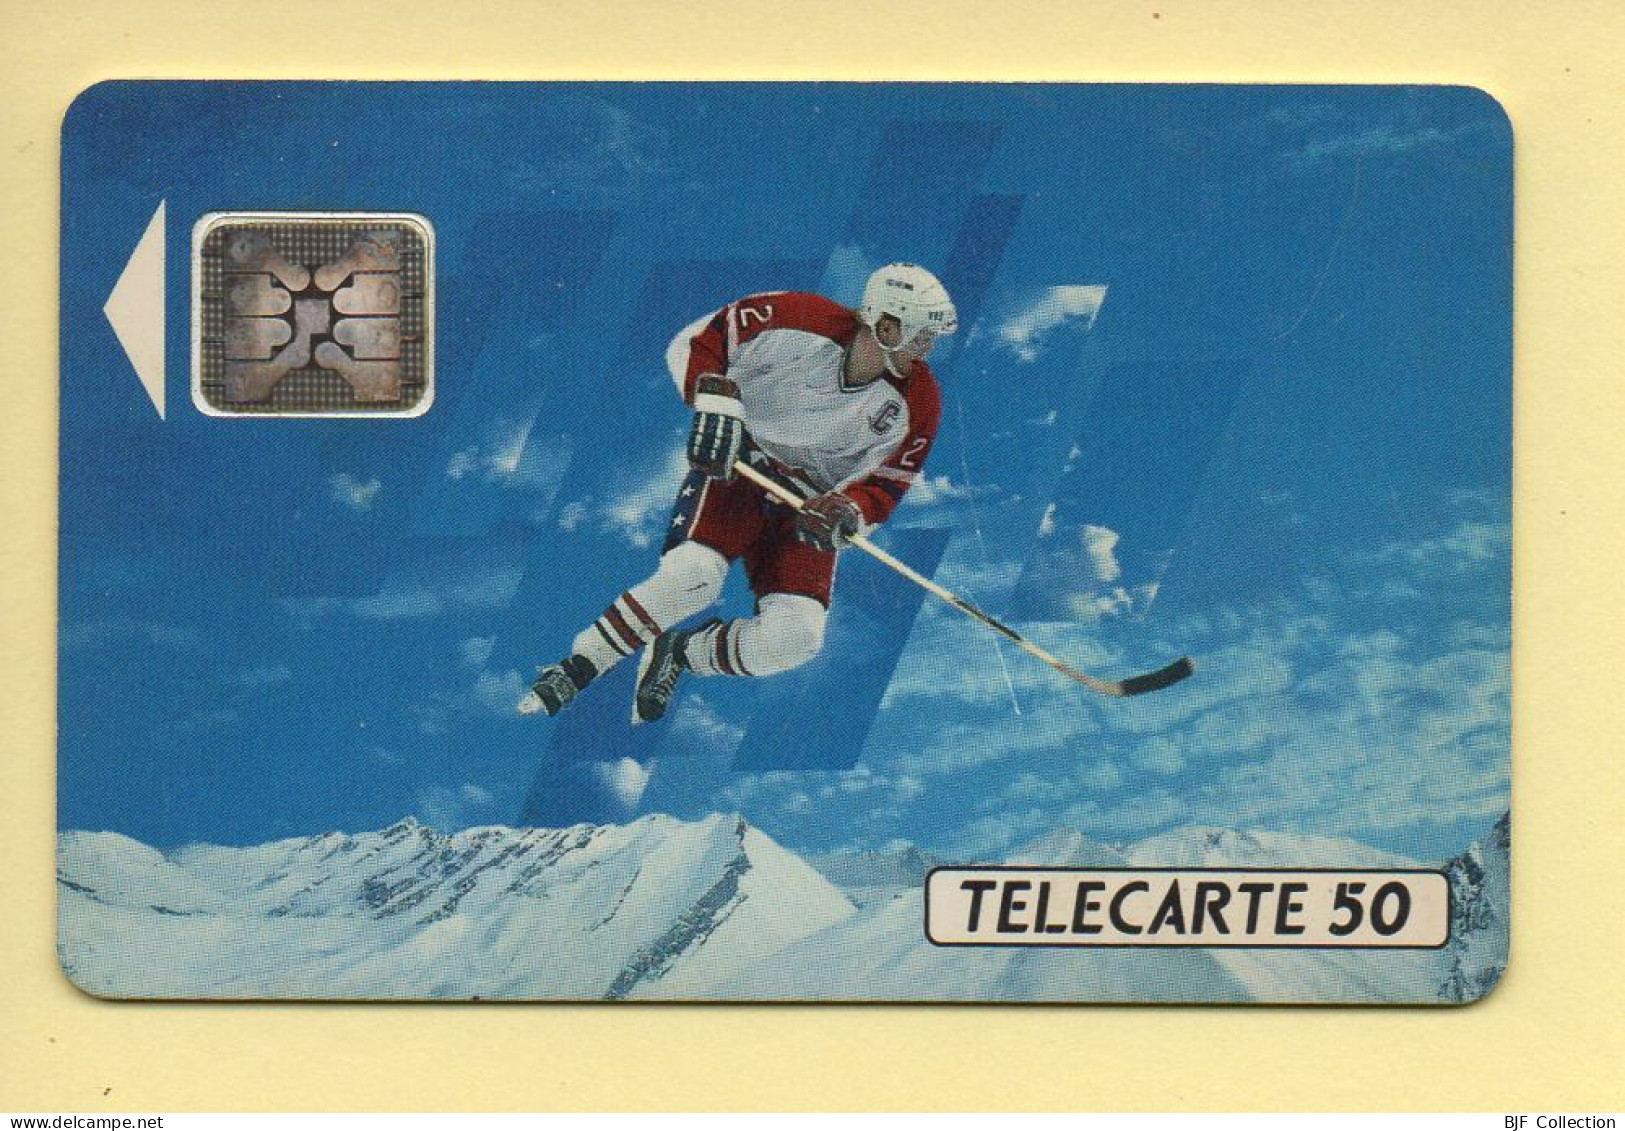 Télécarte 1991 : JOUEUR DE HOCKEY / 50 Unités / Numéro 32915 / 10-91 / Jeux Olympiques D'Hiver ALBERTVILLE 92 - 1991